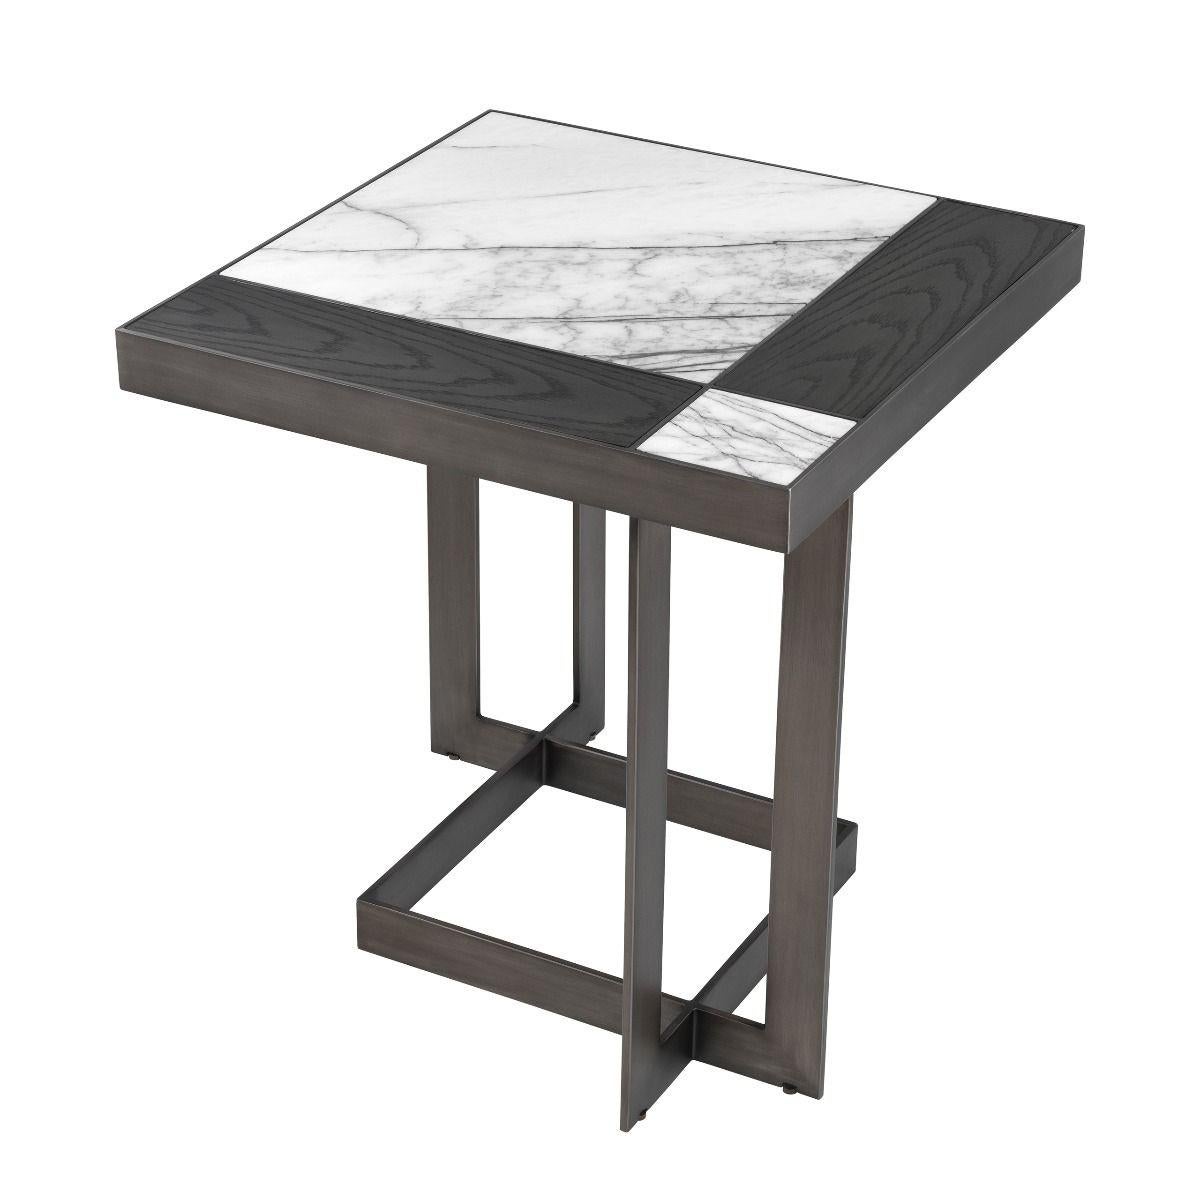 Table d'appoint en marbre chêne noir et acier inoxydable
structure en finition gunmetal. Avec du marbre blanc et
dessus en chêne noir.
  